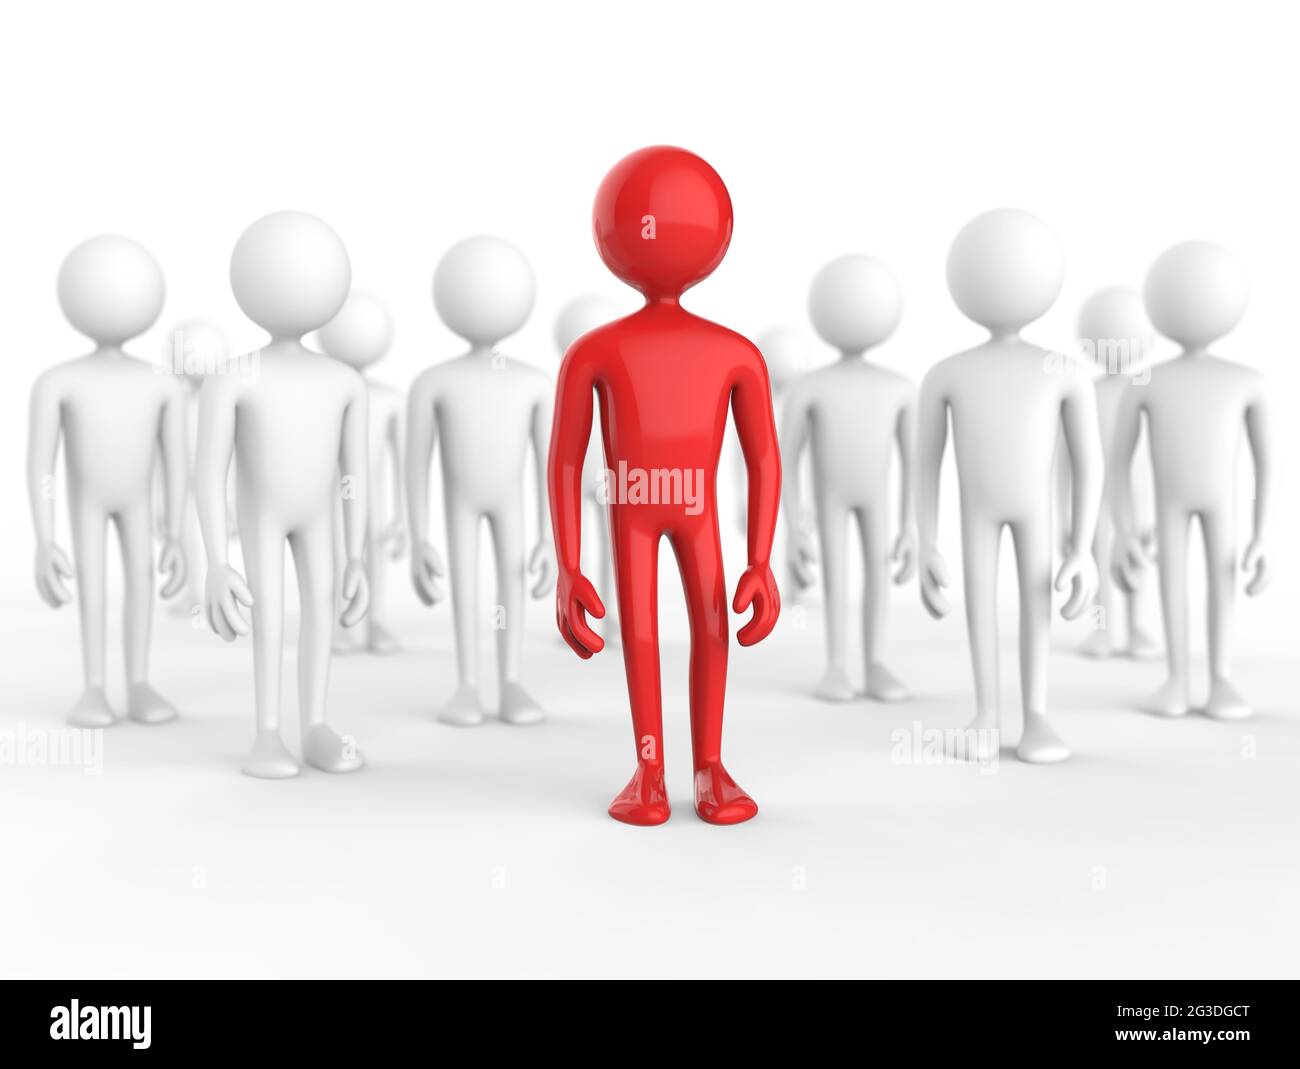 Un homme de dessin animé rouge se trouve devant des hommes de dessin animé gris - Illustration 3D - un homme unique se distingue Banque D'Images